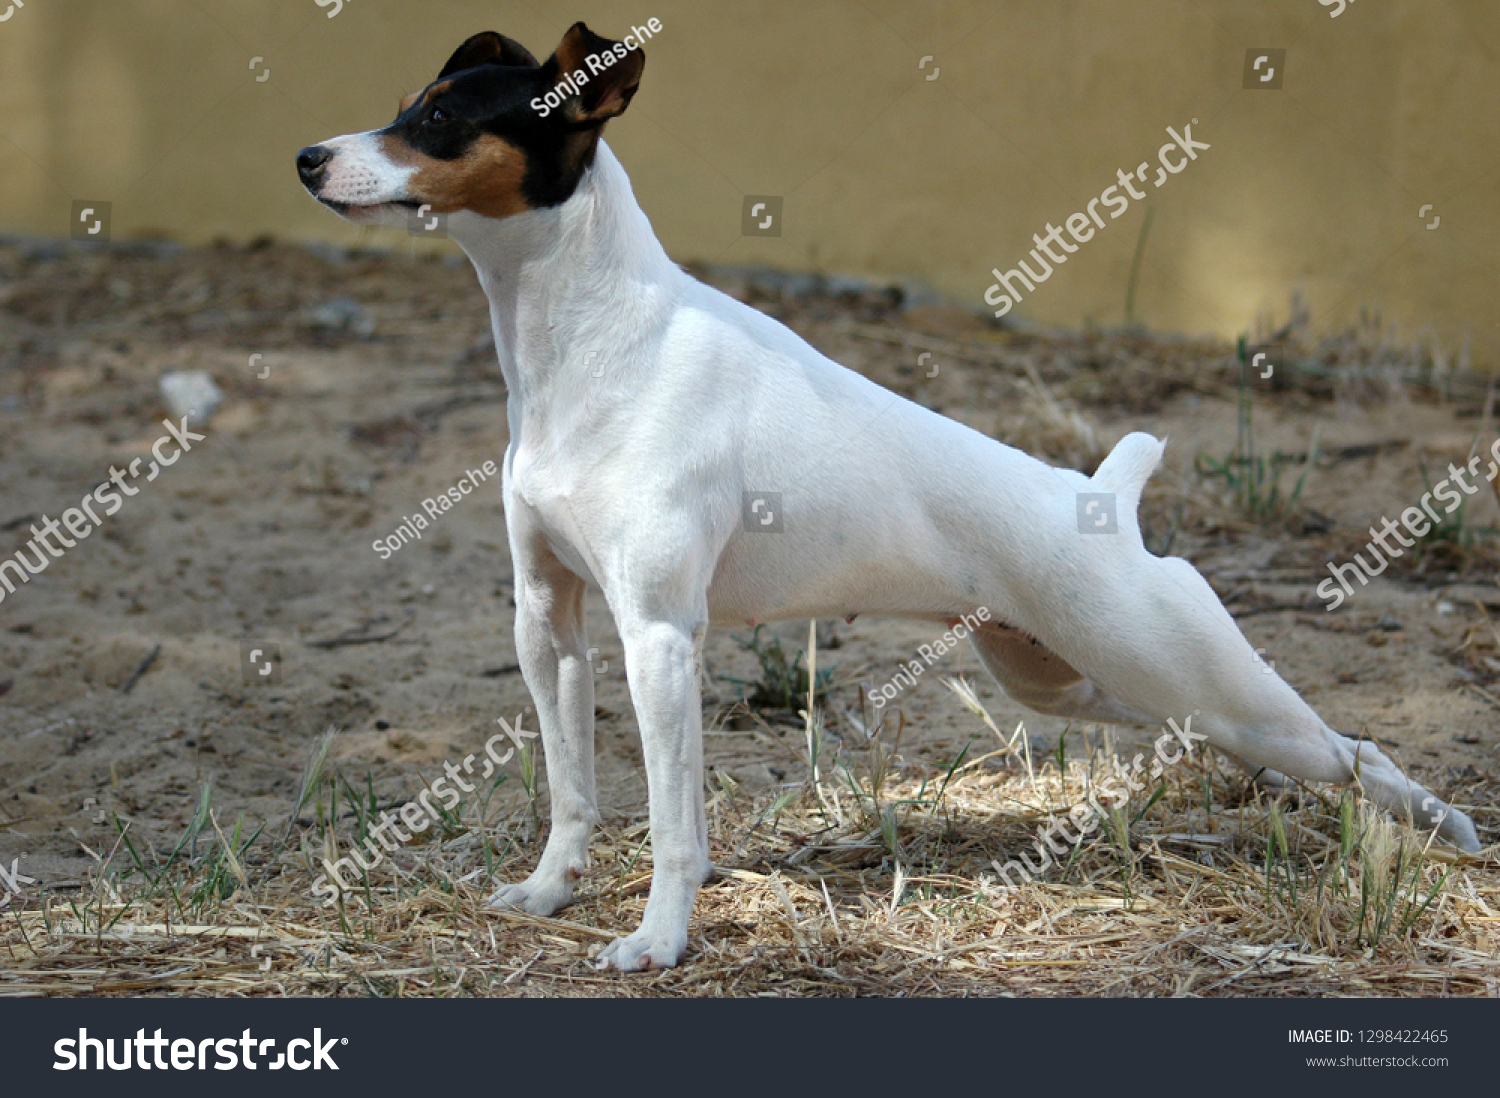 spanish terrier dog